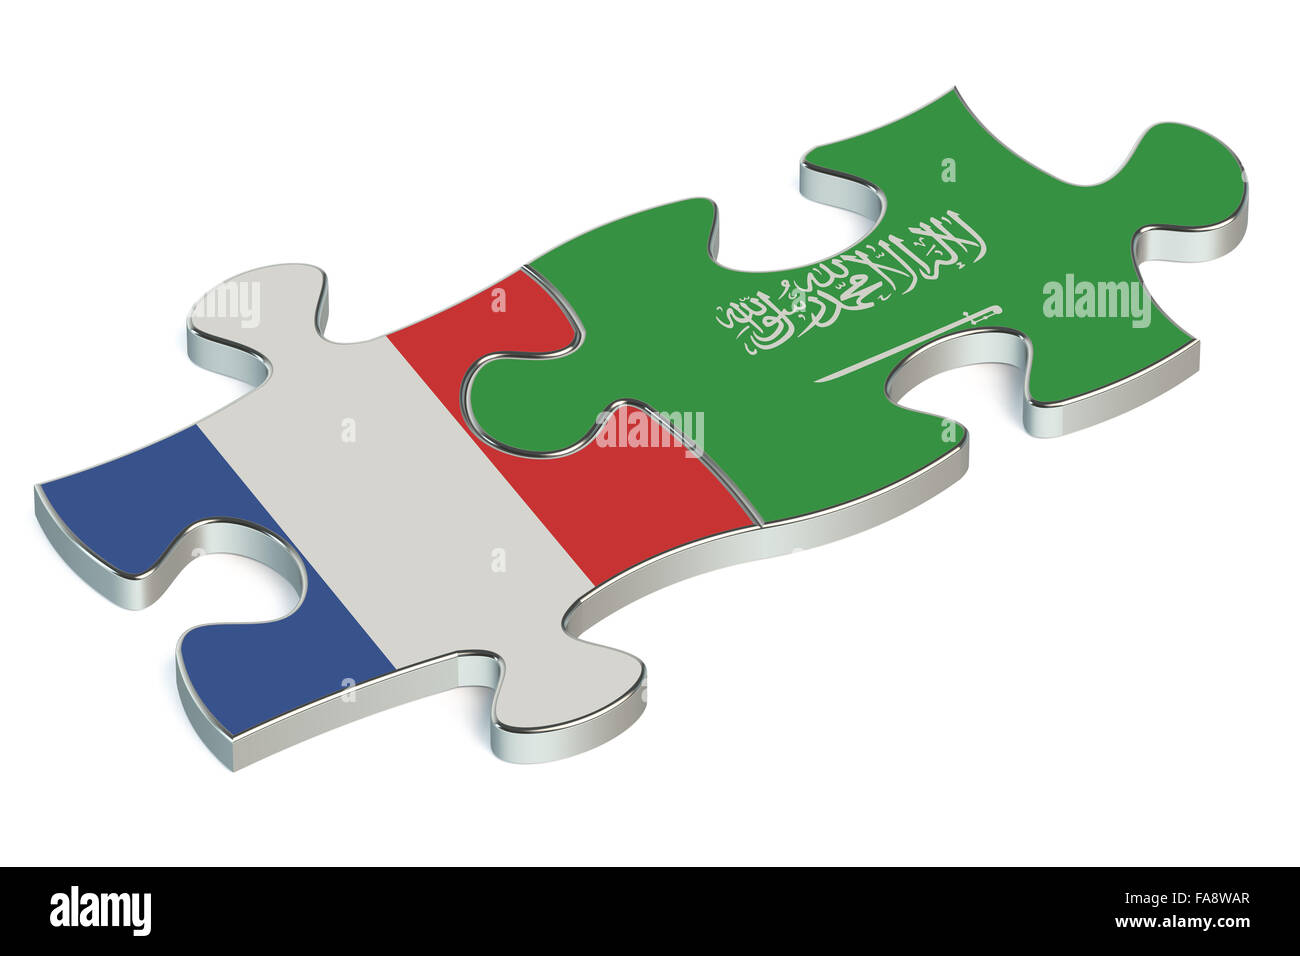 Saudi-Arabien und Frankreich Rätsel von Fahnen Stockfoto